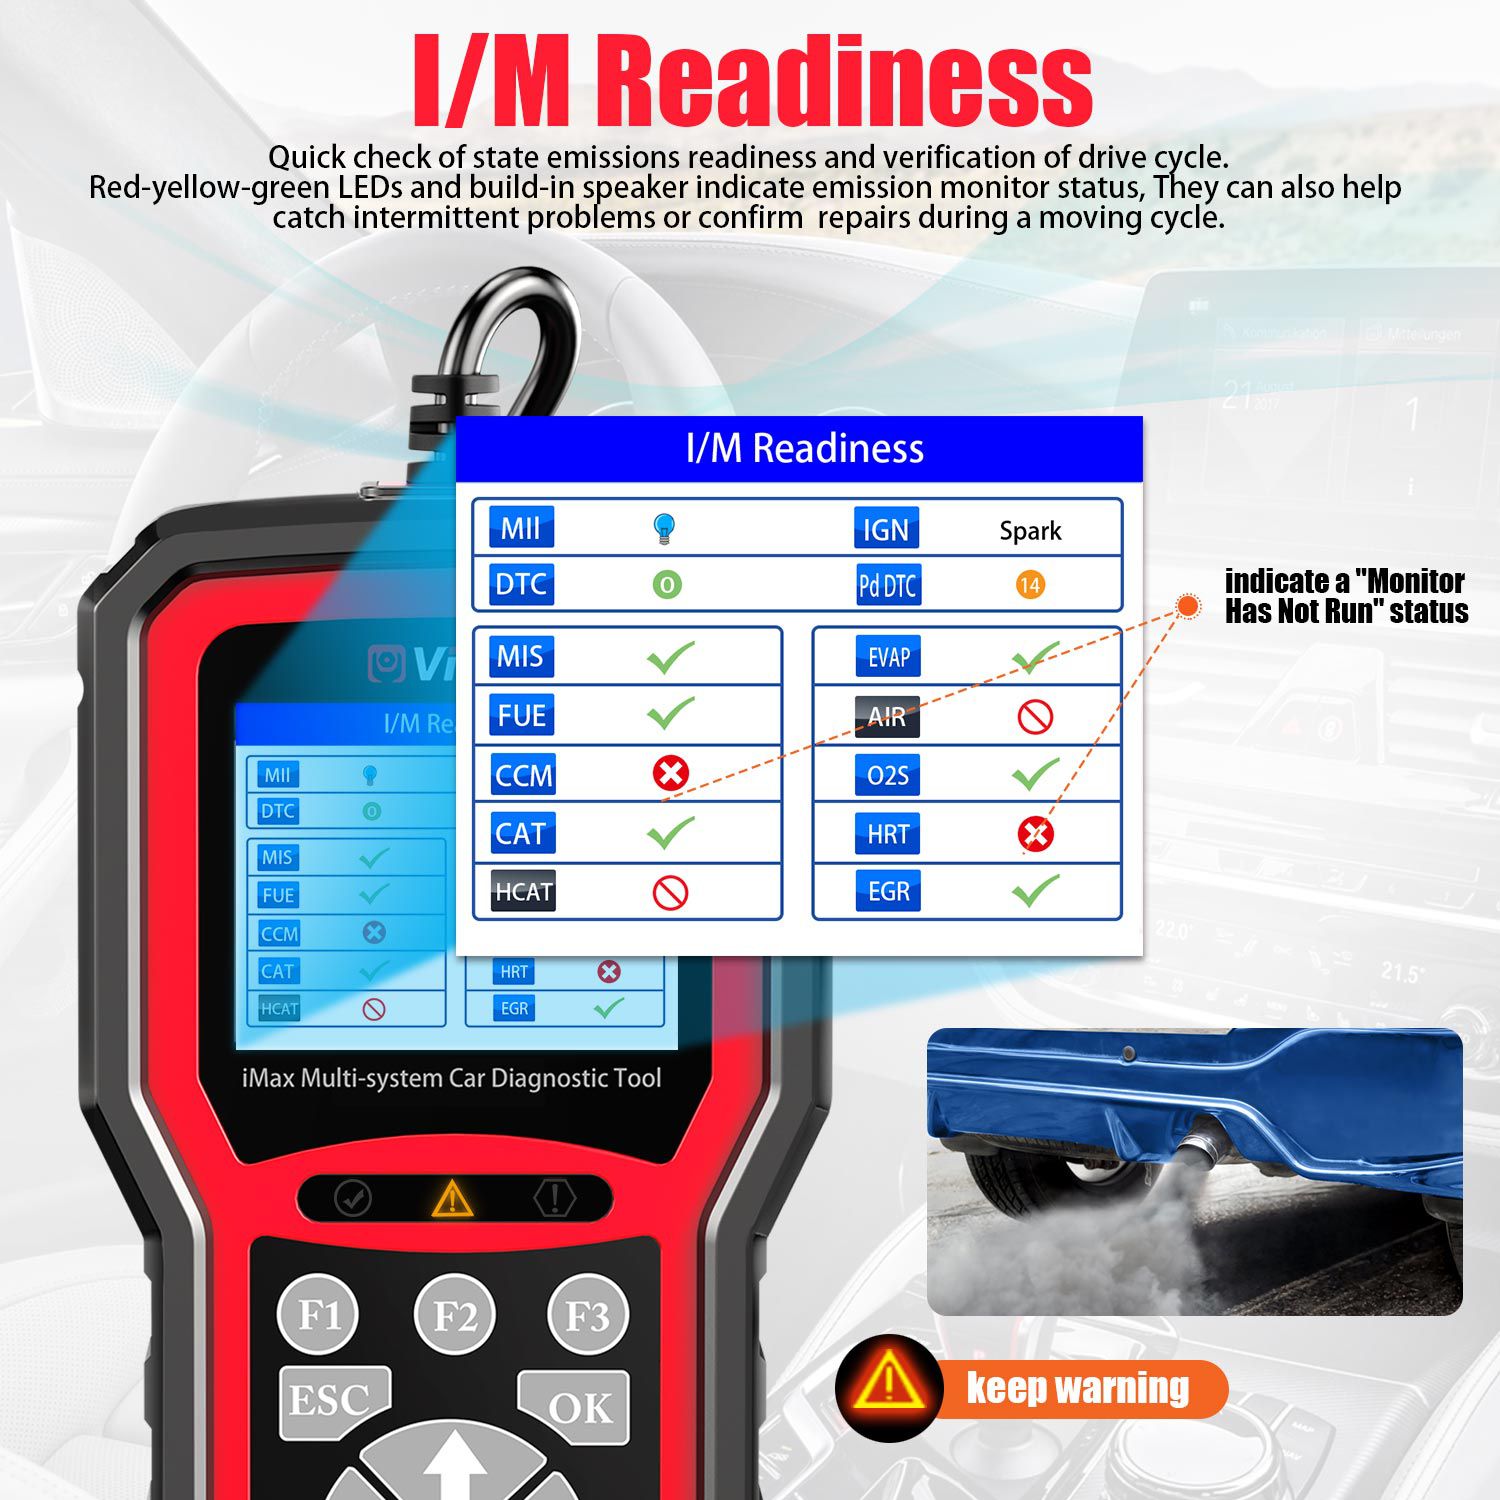 Videont imax4303 Jaguar y Land Rover jlr herramientas de diagnóstico de vehículos de todo el sistema admiten restablecer / diagnóstico OBDII / servicio